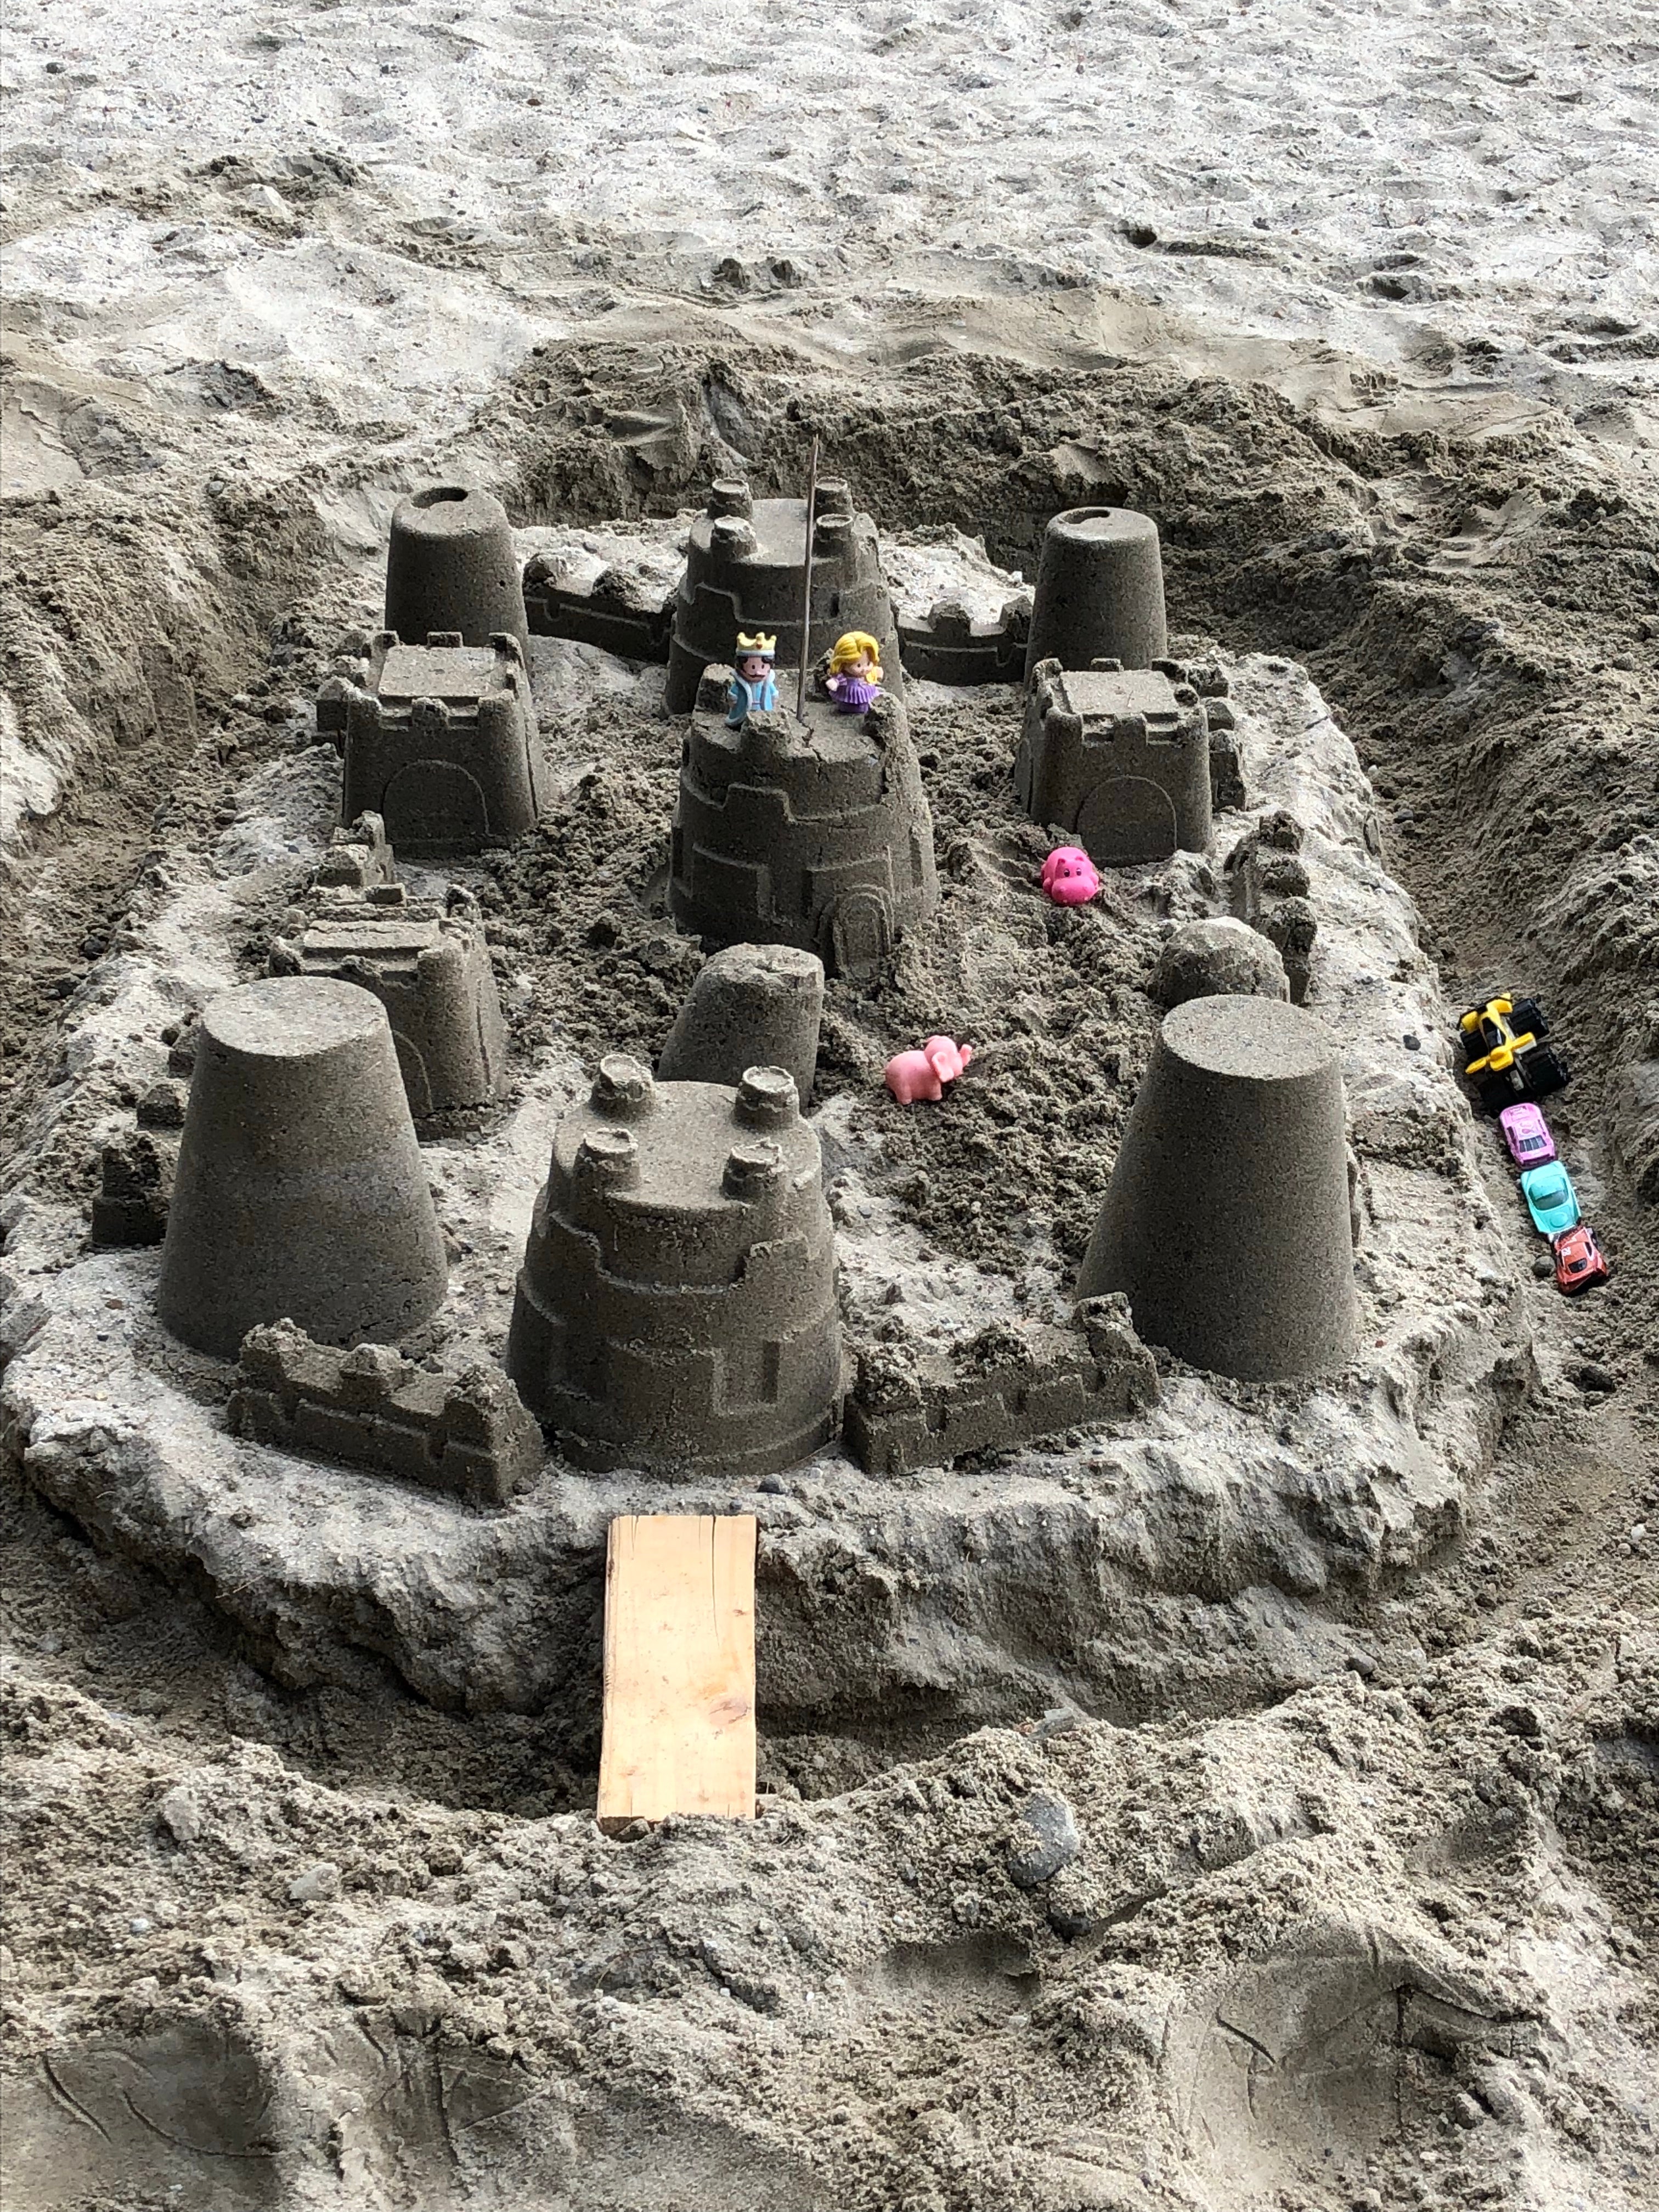 Sand castle!